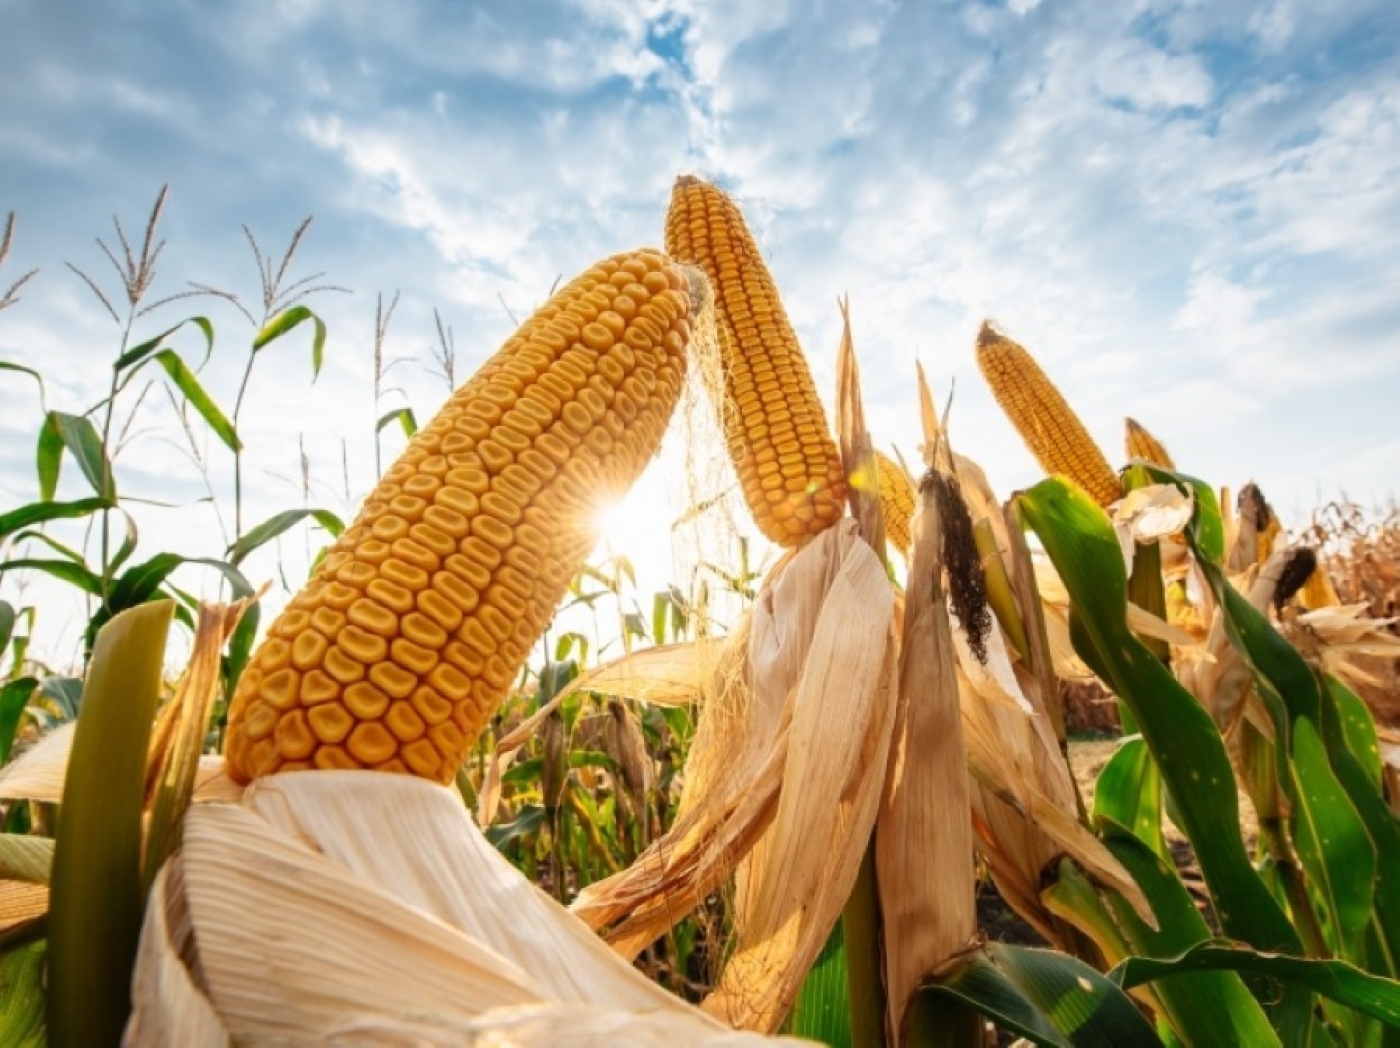 В ближайшее время погодные условия будут благоприятными для роста кукурузы